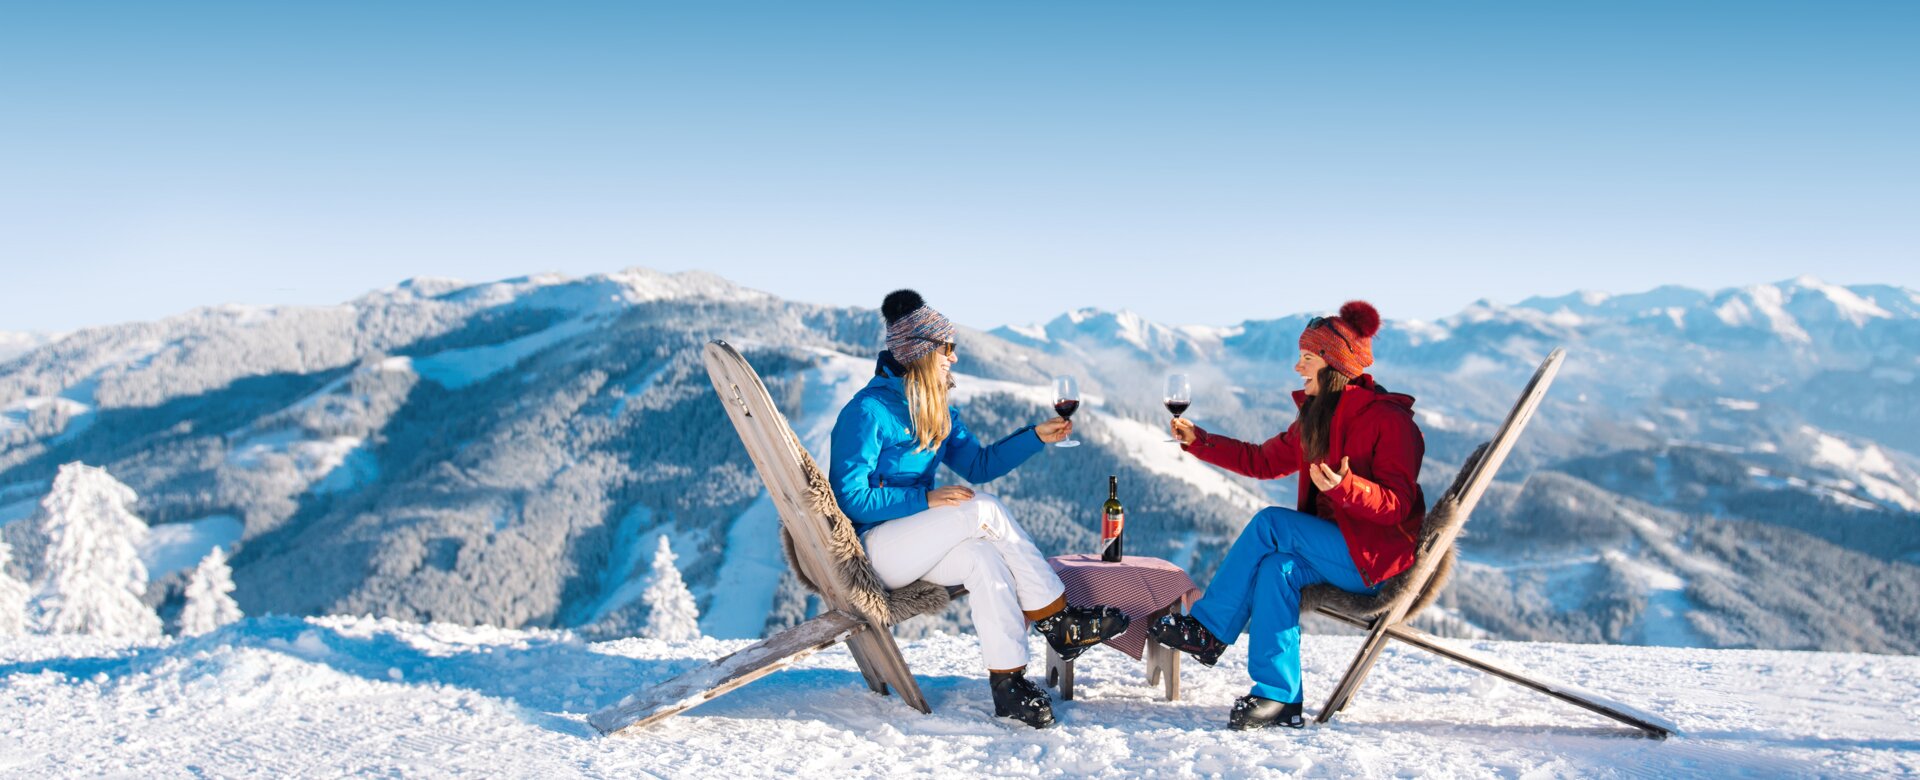 Gourmet Ski- und Weingenuss auf den Hütten in Ski amadé